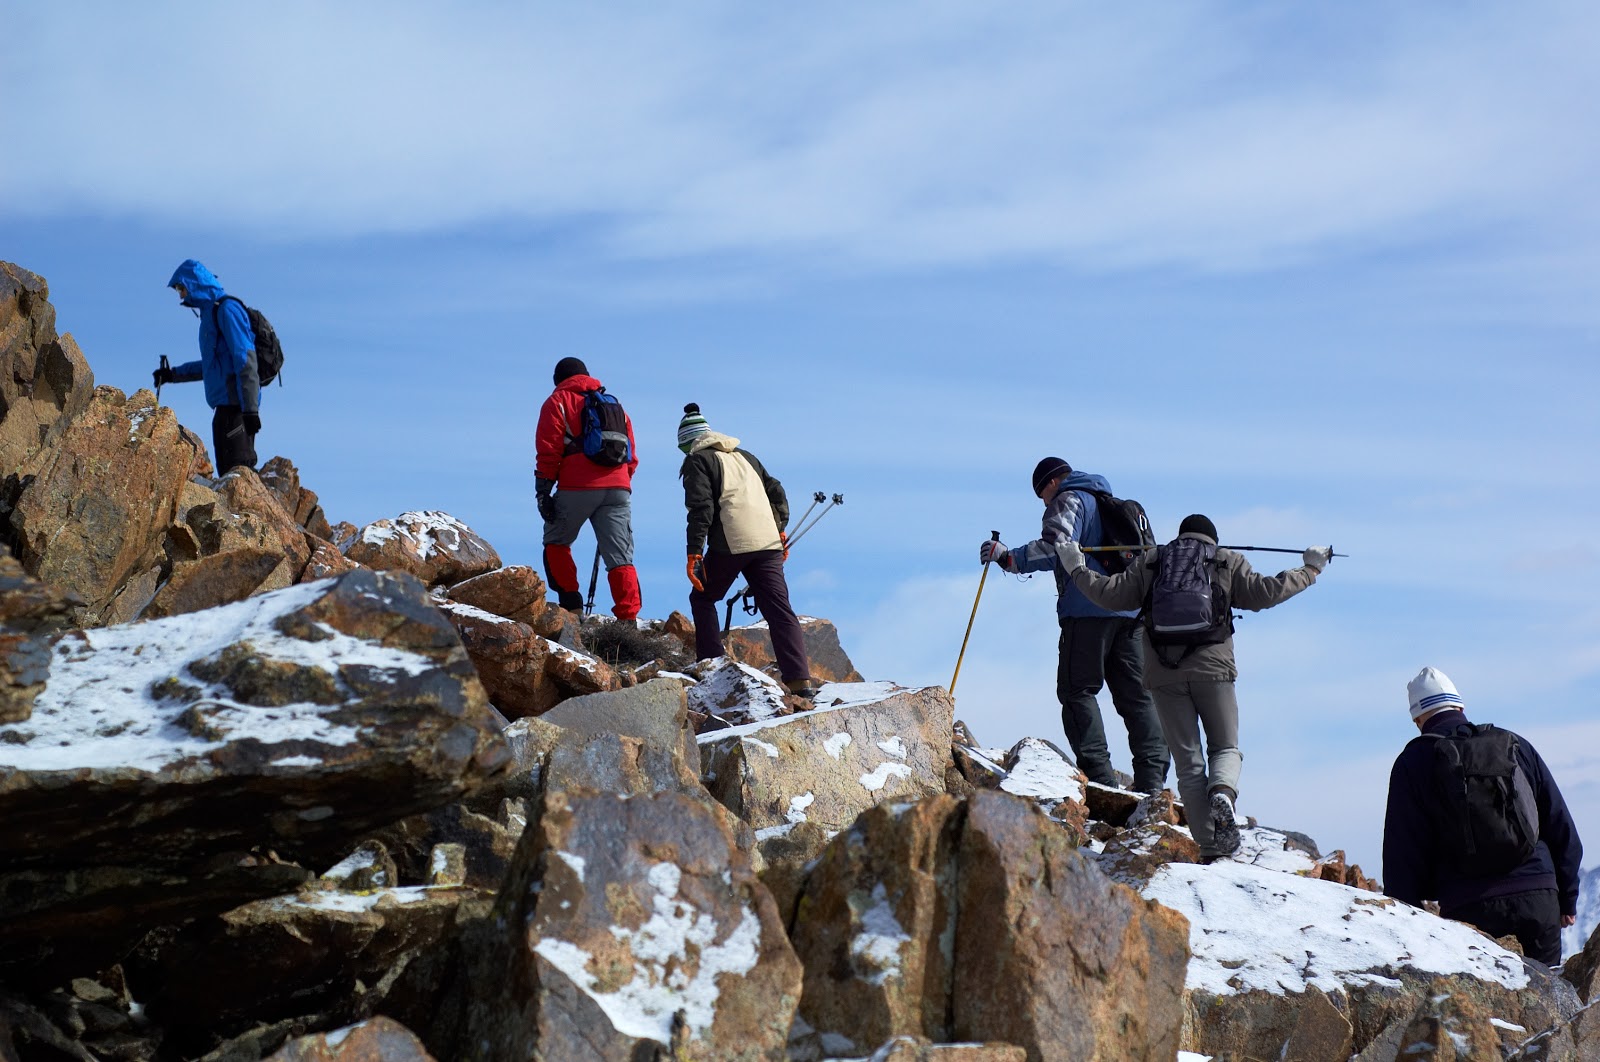 Climbing Kenya’s highest mountain, Mount Kenya